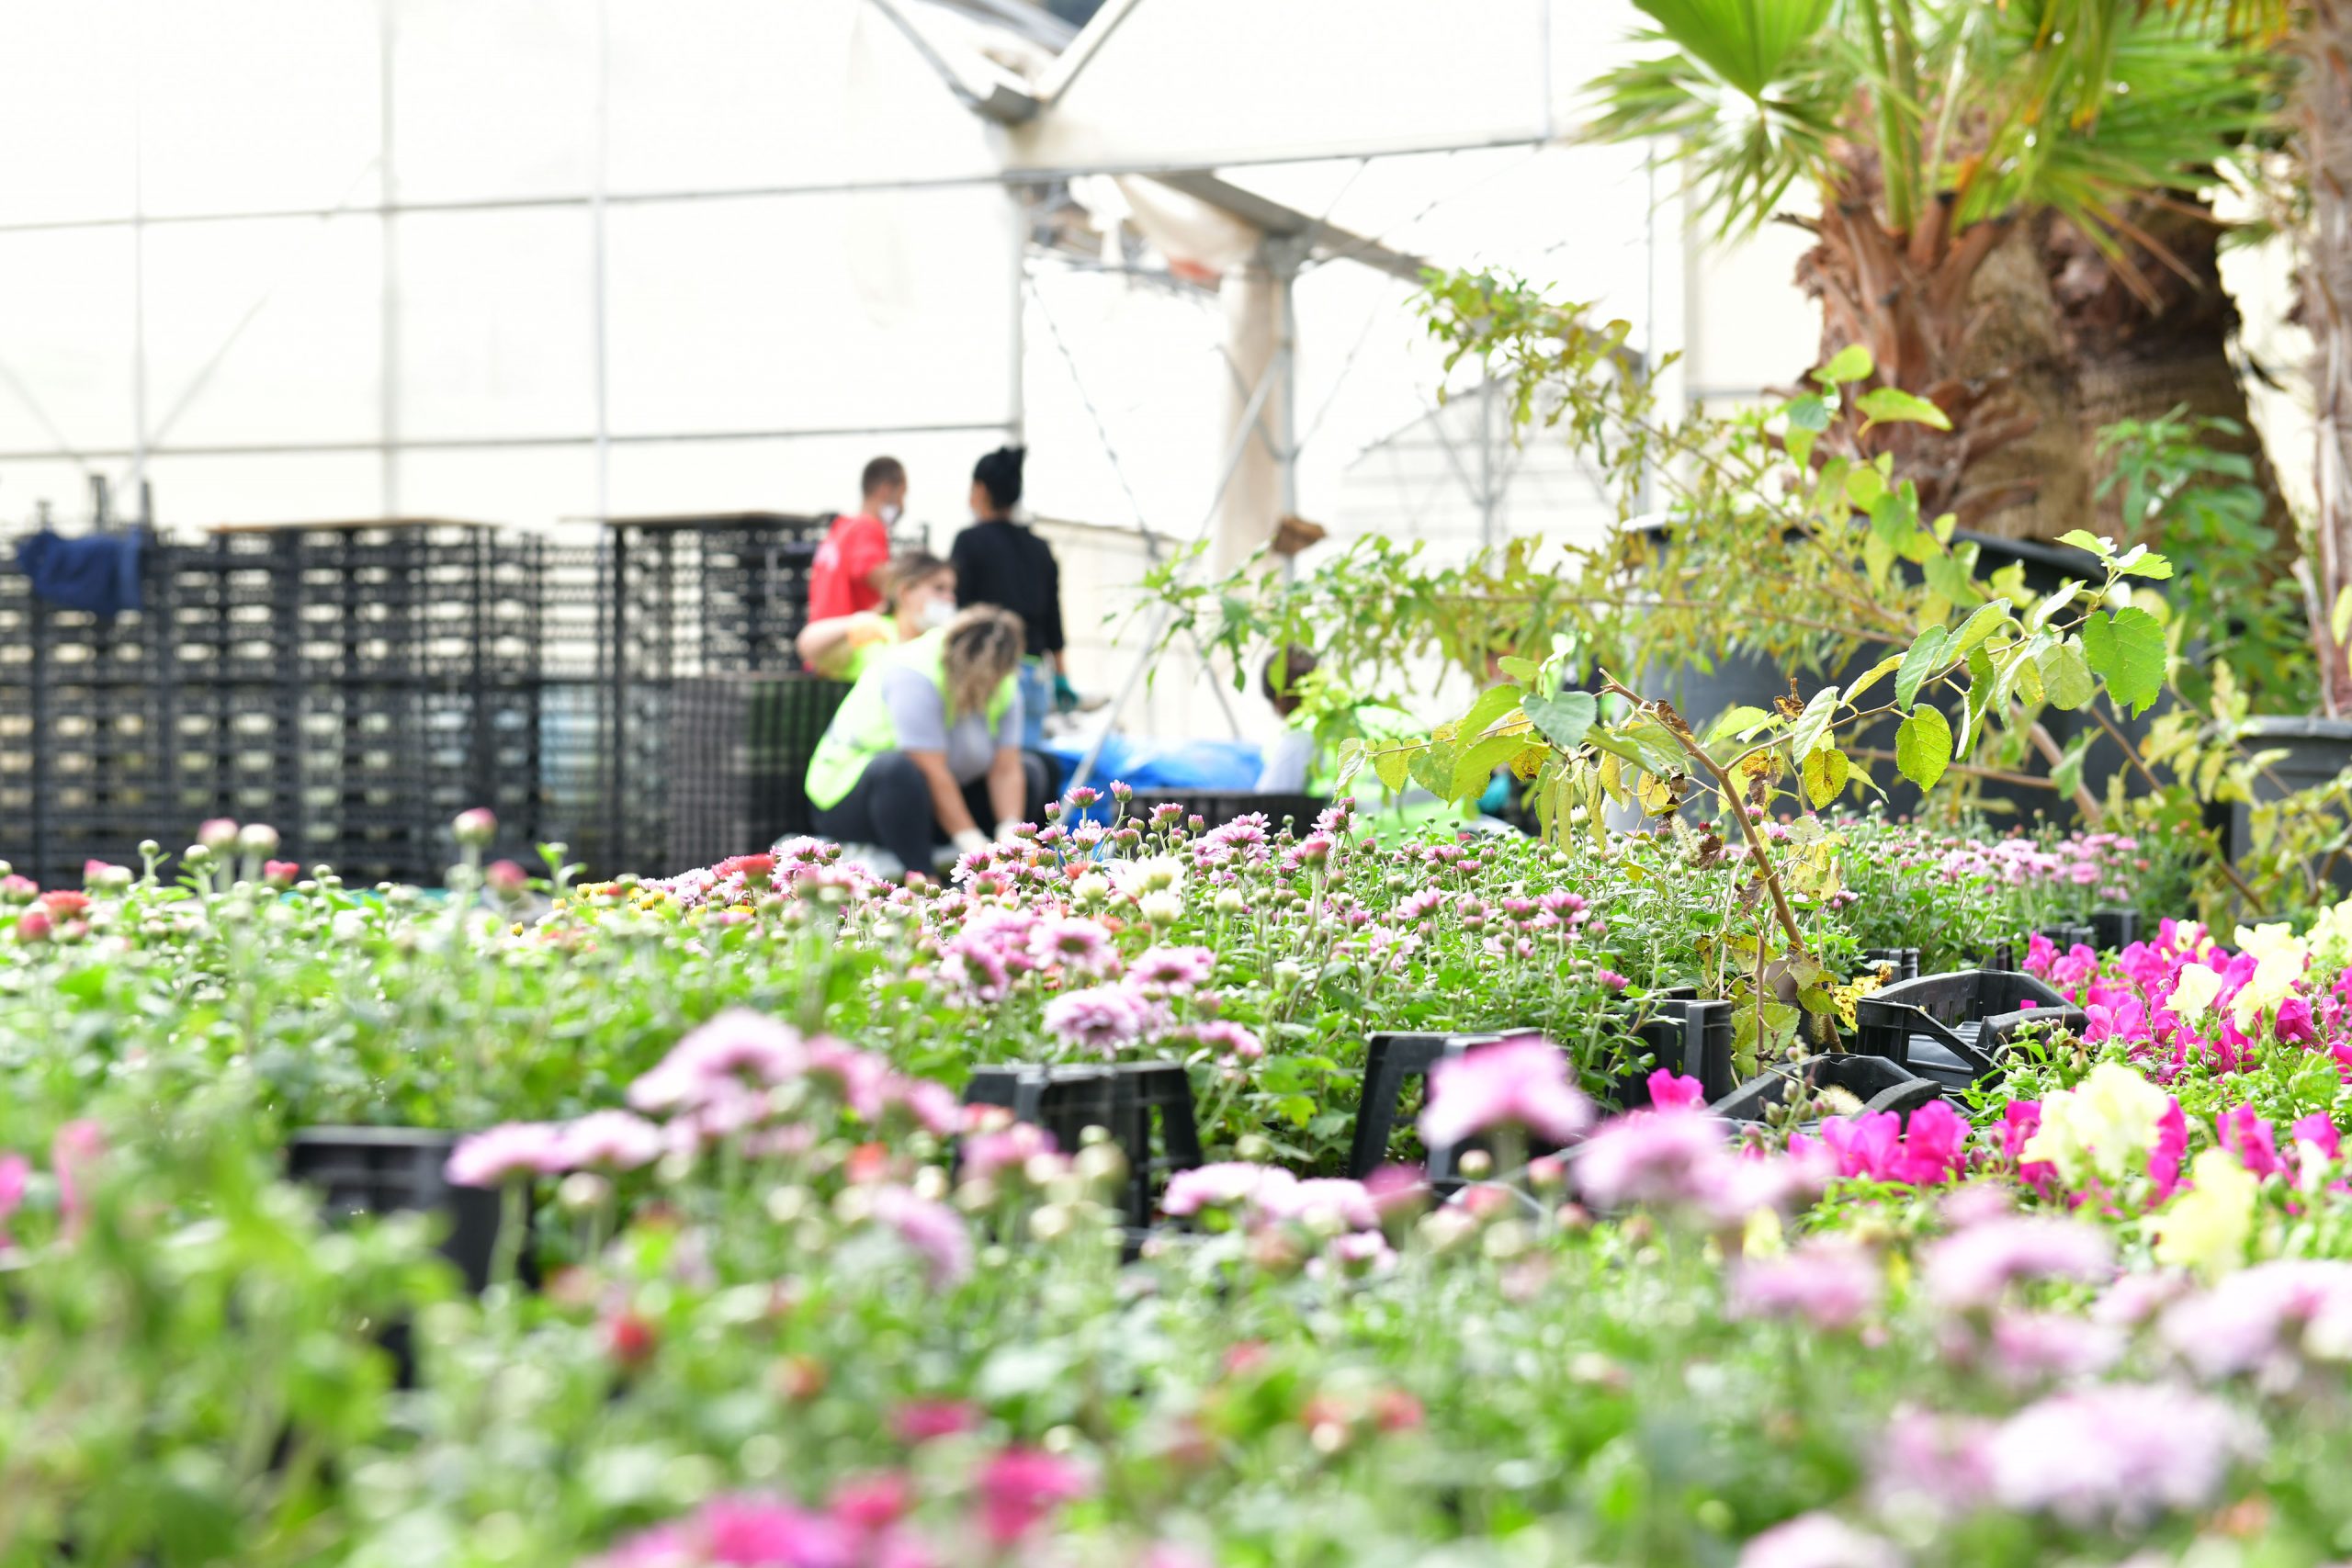 Çiğli Belediyesi Kendi Çiçeğini Üretiyor